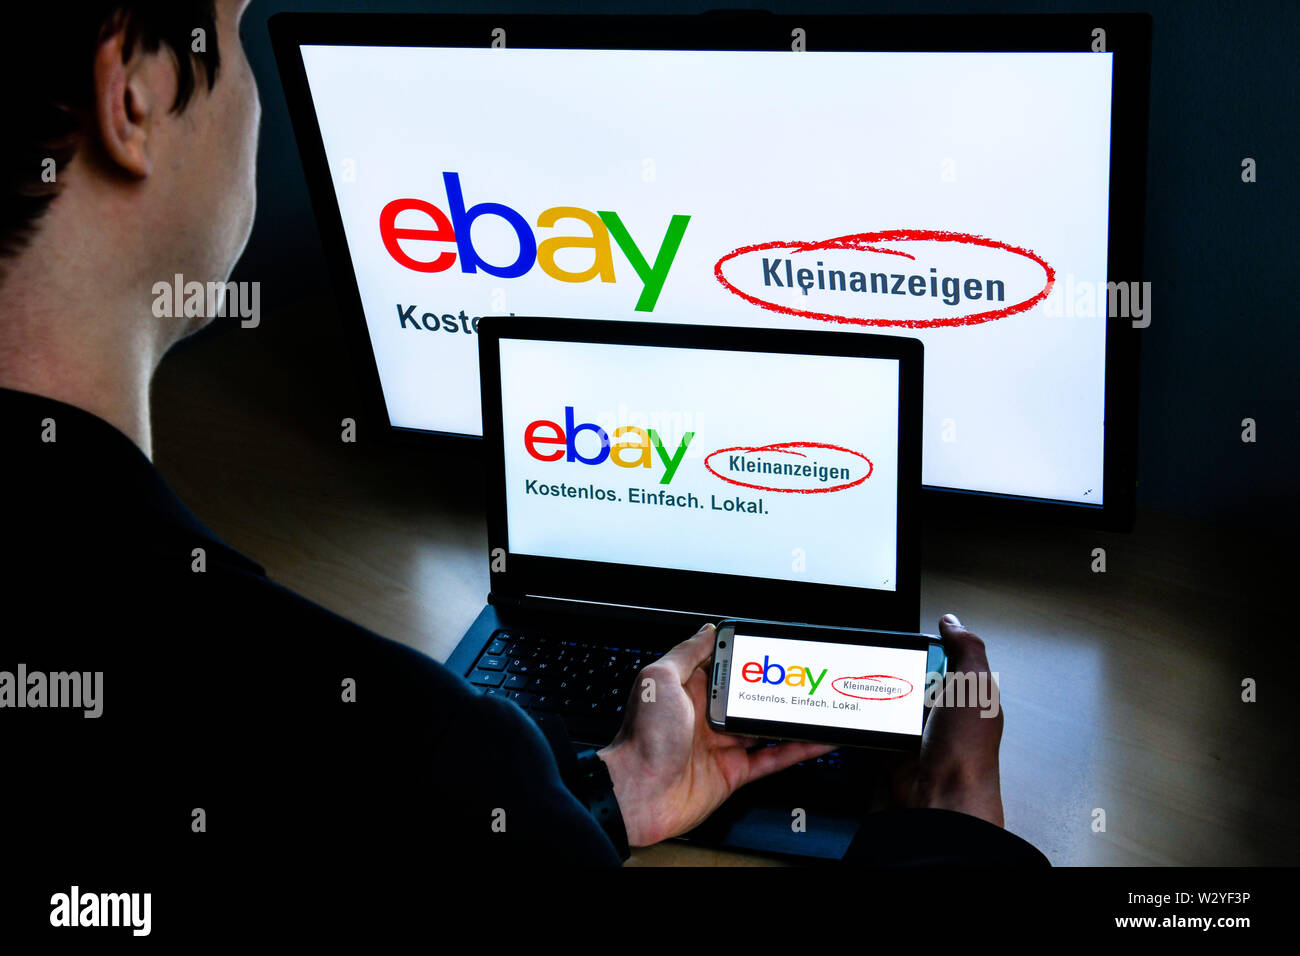 Logo ebay Kleinanzeigen Stock Photo